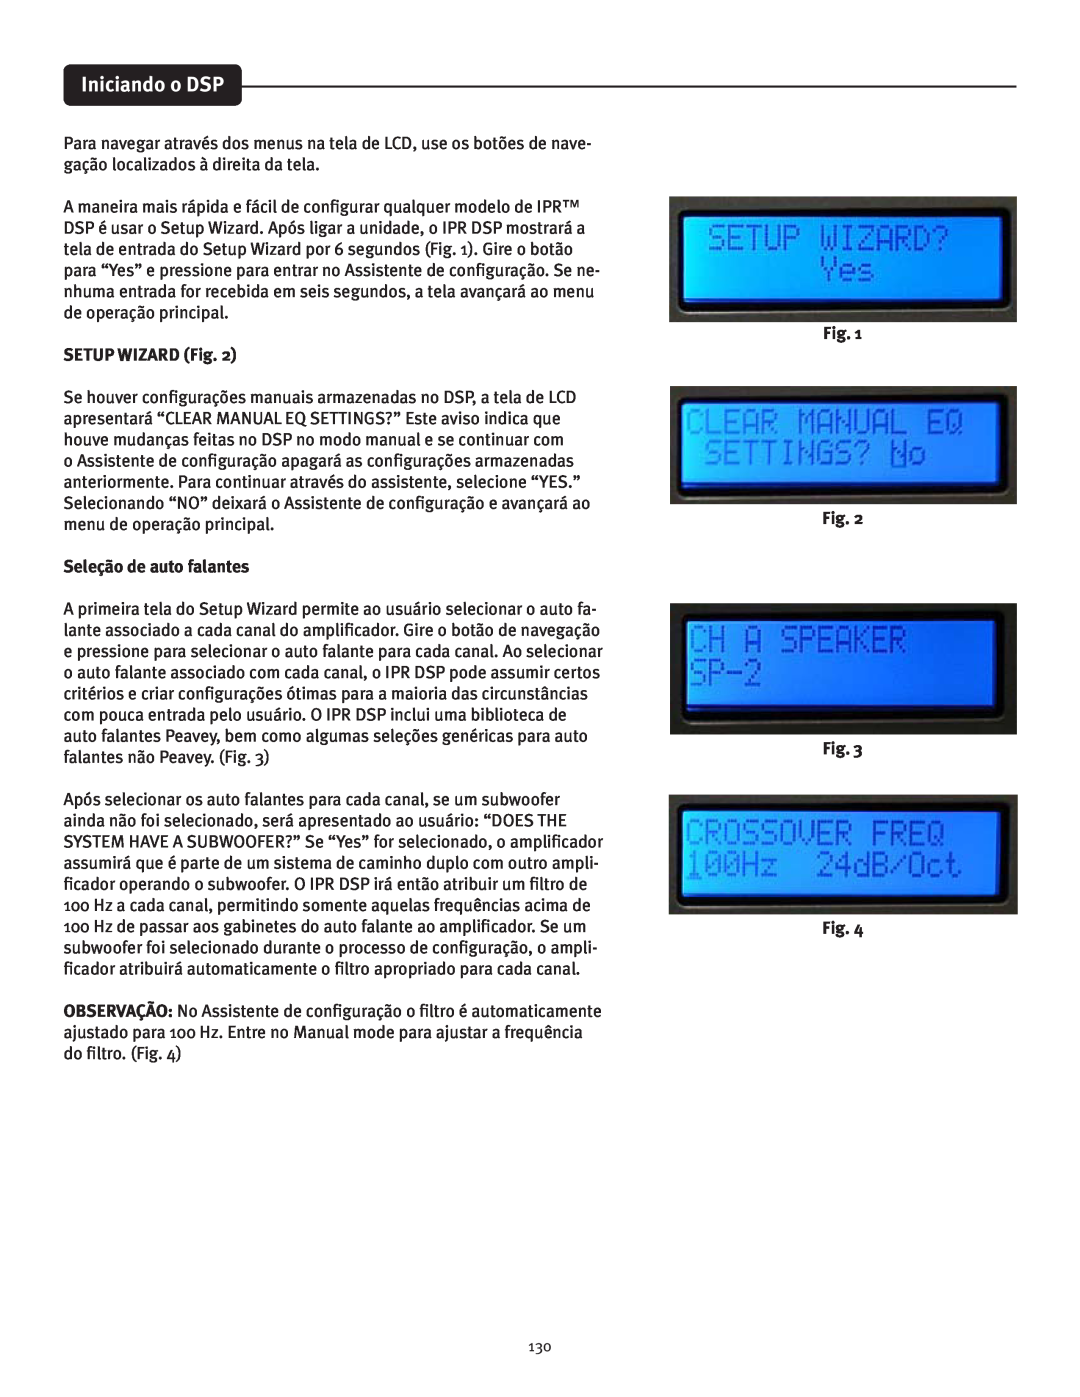 Peavey IPR 4500, IPR 3000, IPR 6000, IPR 1600 manual Iniciando o DSP, SETUP WIZARD Fig, Seleção de auto falantes 